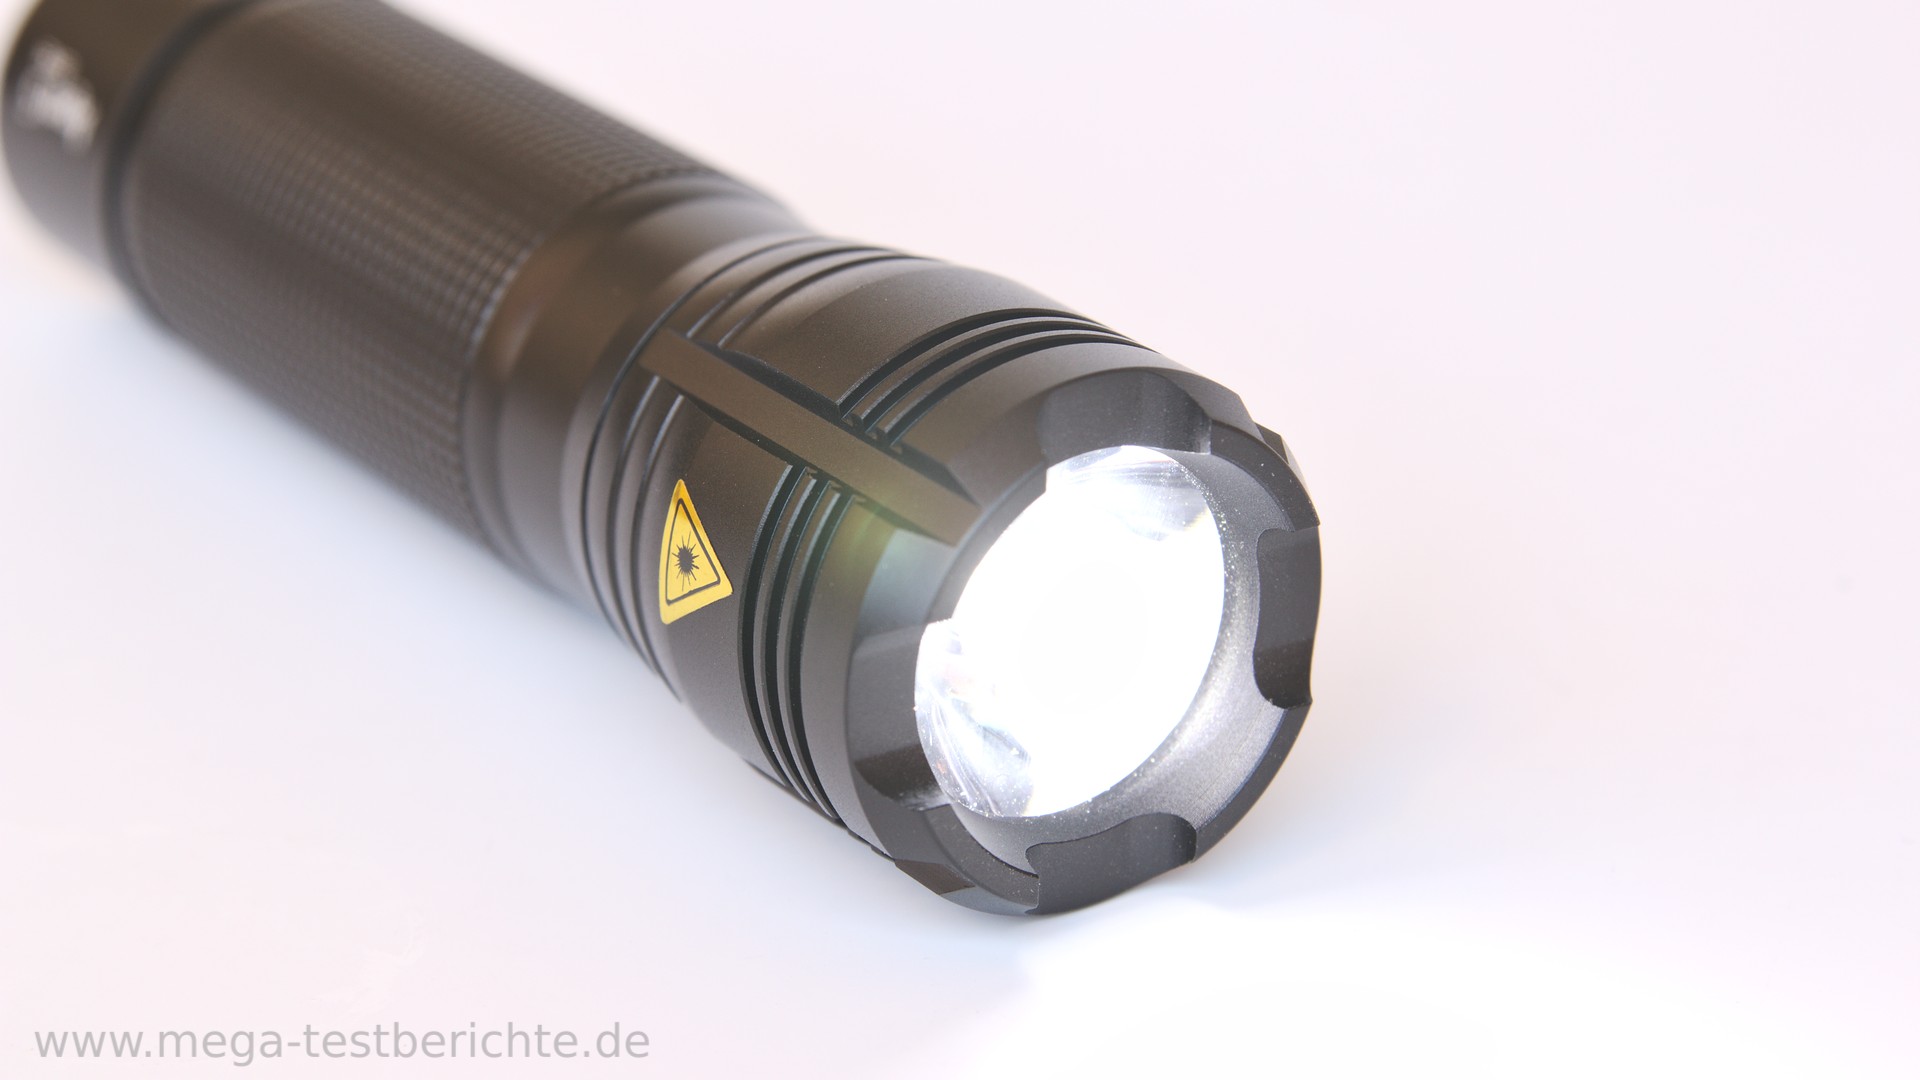 ANSMANN 1600-0036 Agent 5 LED Taschenlampe 13 cm mit Präzisionslinse und extrem robustem Gehäuse 5 Watt LED 